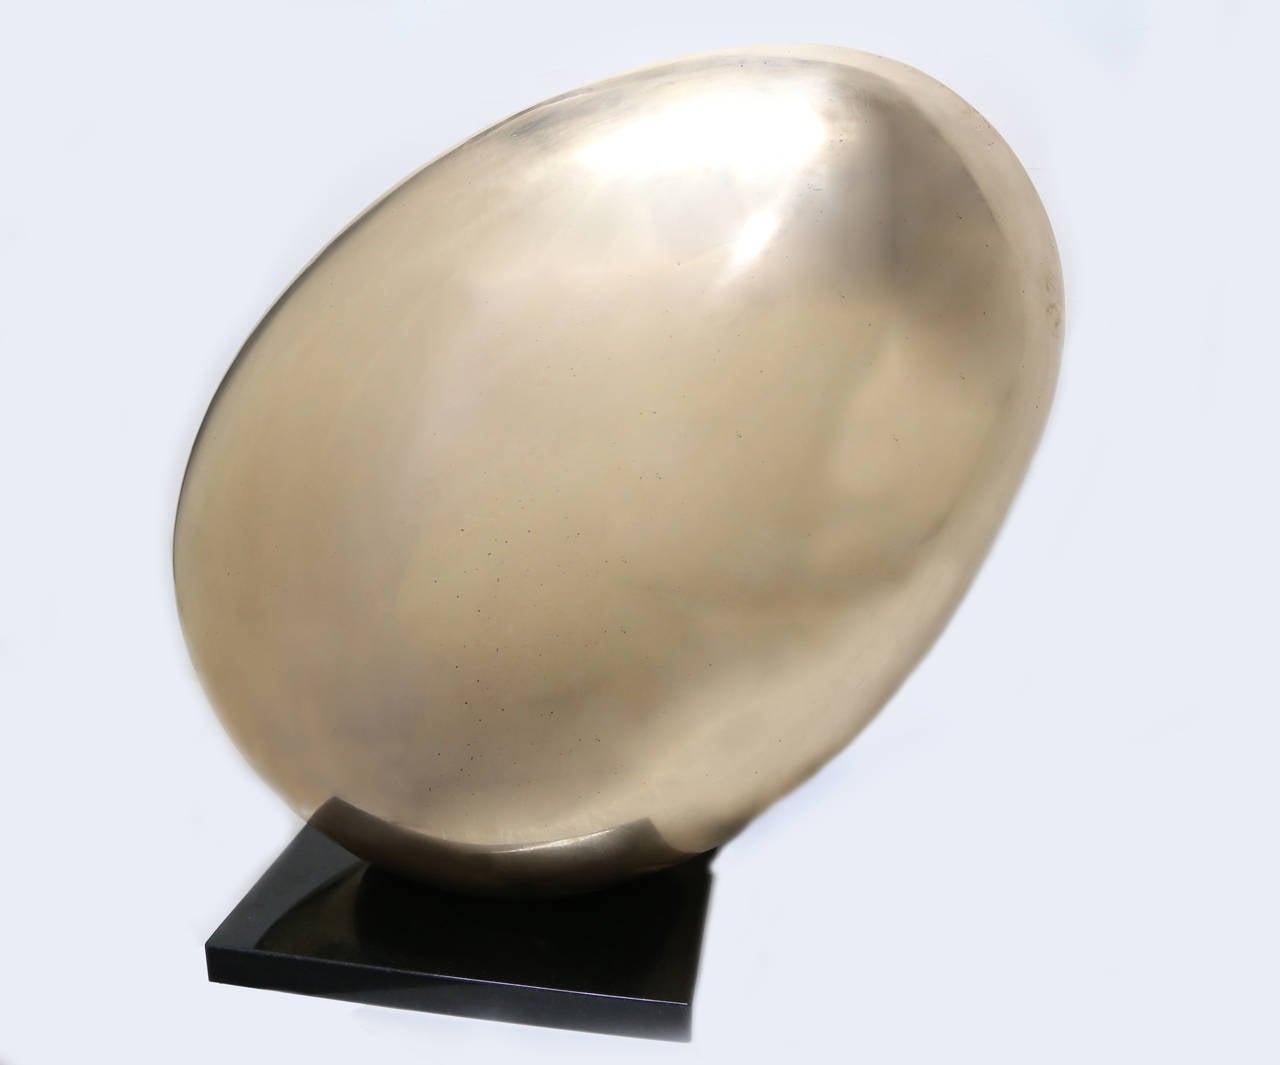 Paul von Ringelheim Abstract Sculpture - Egg, Polished Bronze Sculpture by Von Ringelheim 